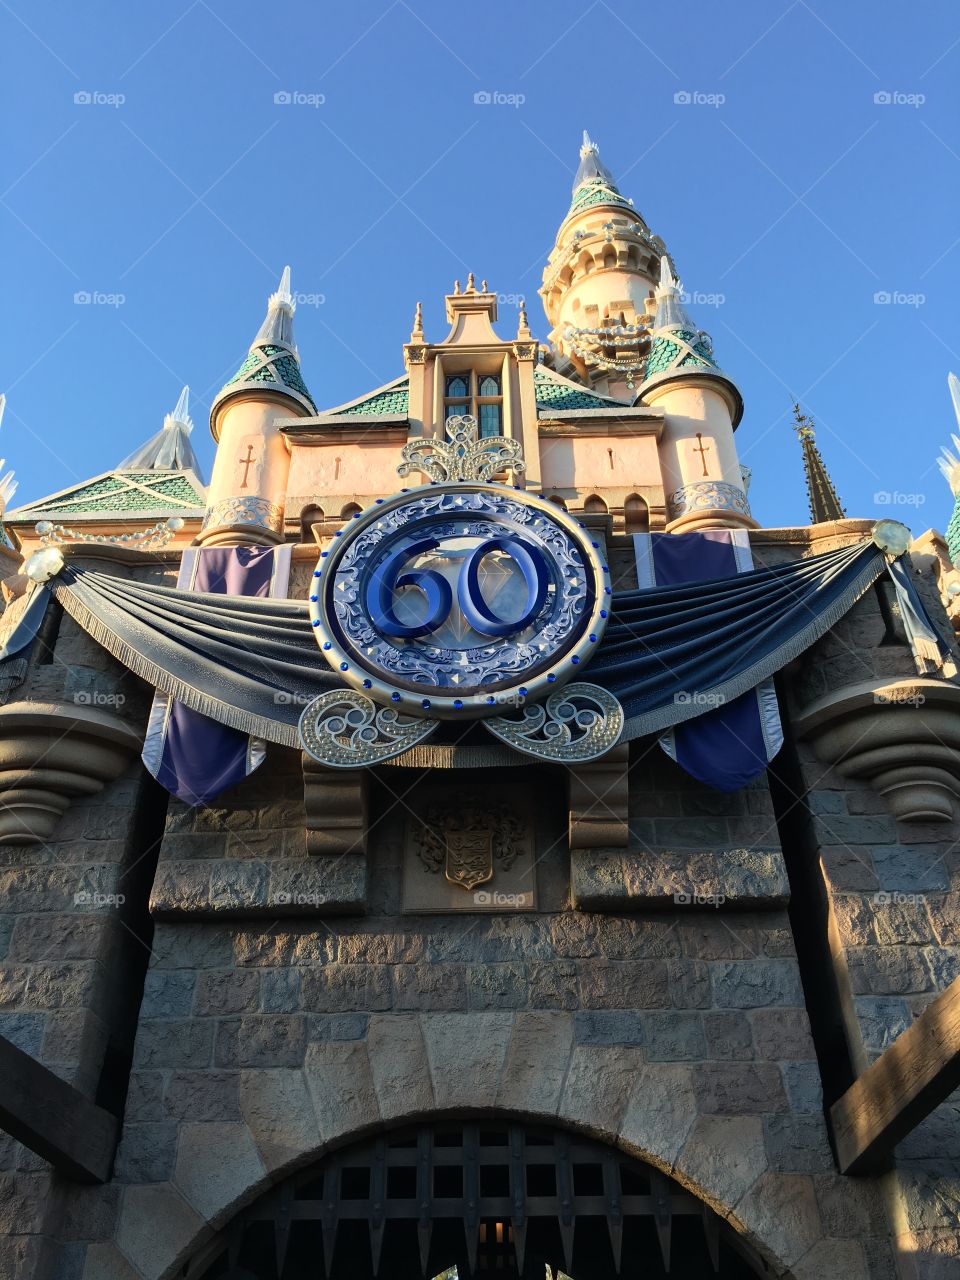 Disneyland 60th anniversary. 